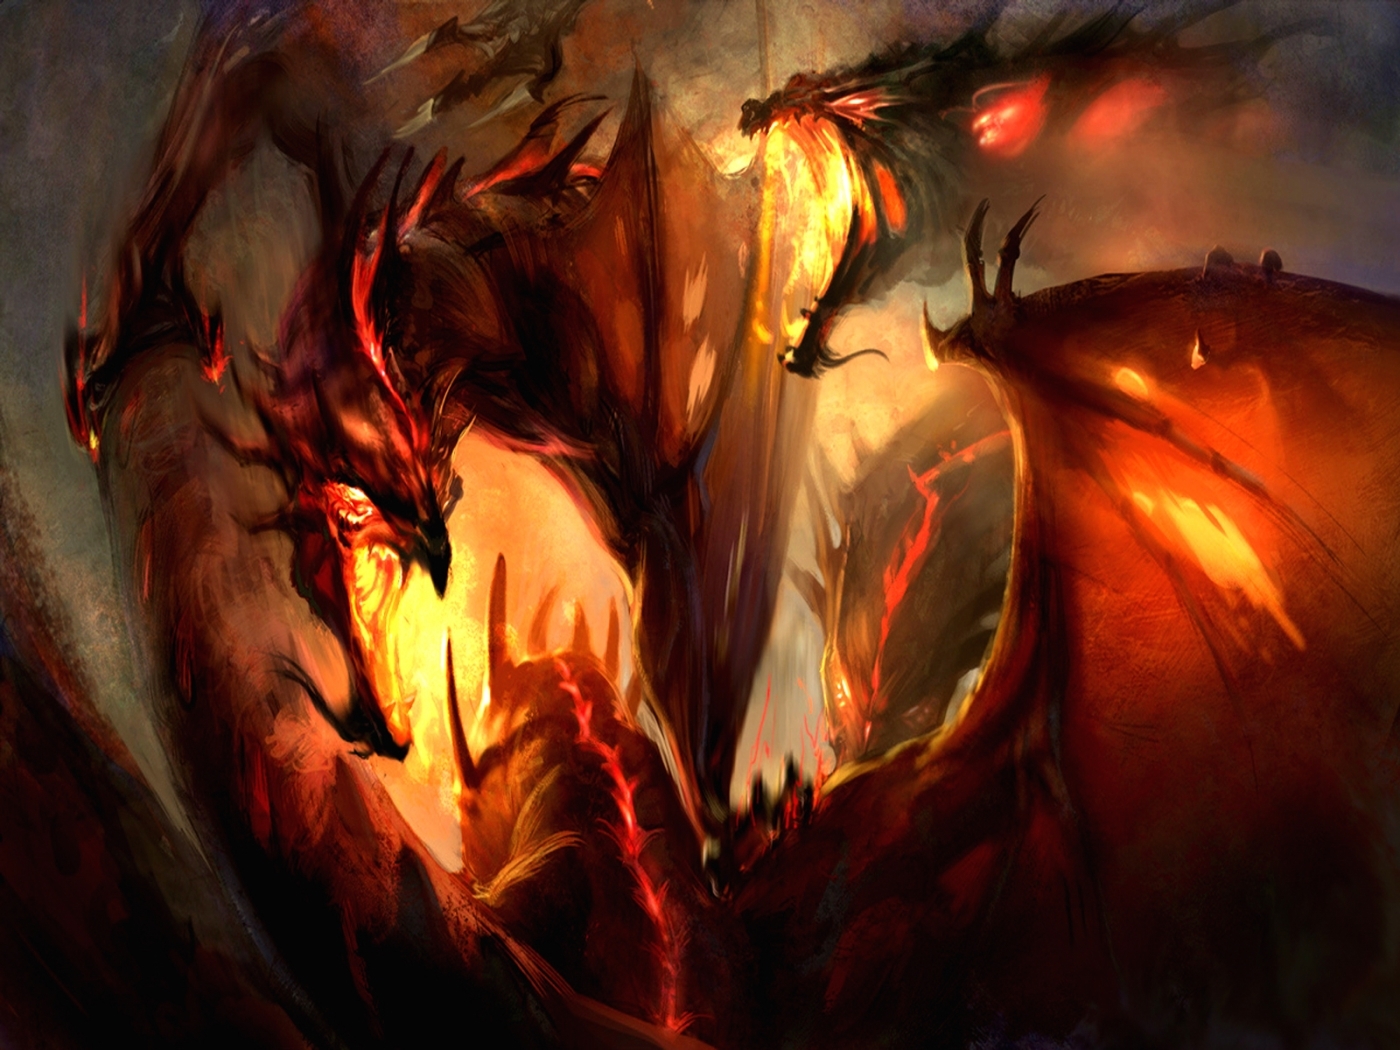 dragons, fantasy Image for desktop